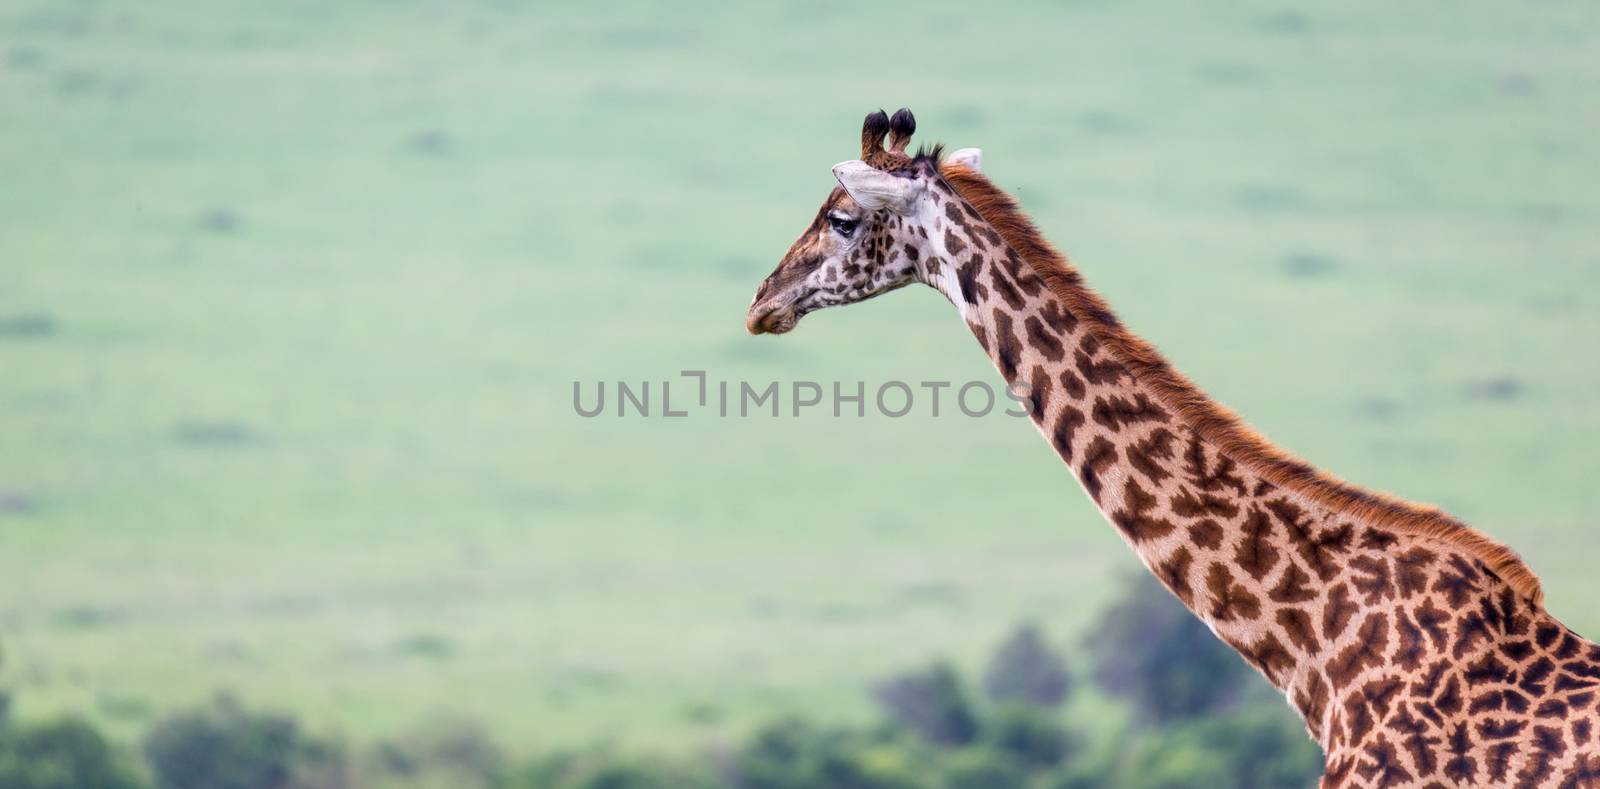 A Masai giraffe in the Kenyan savanna on a meadow